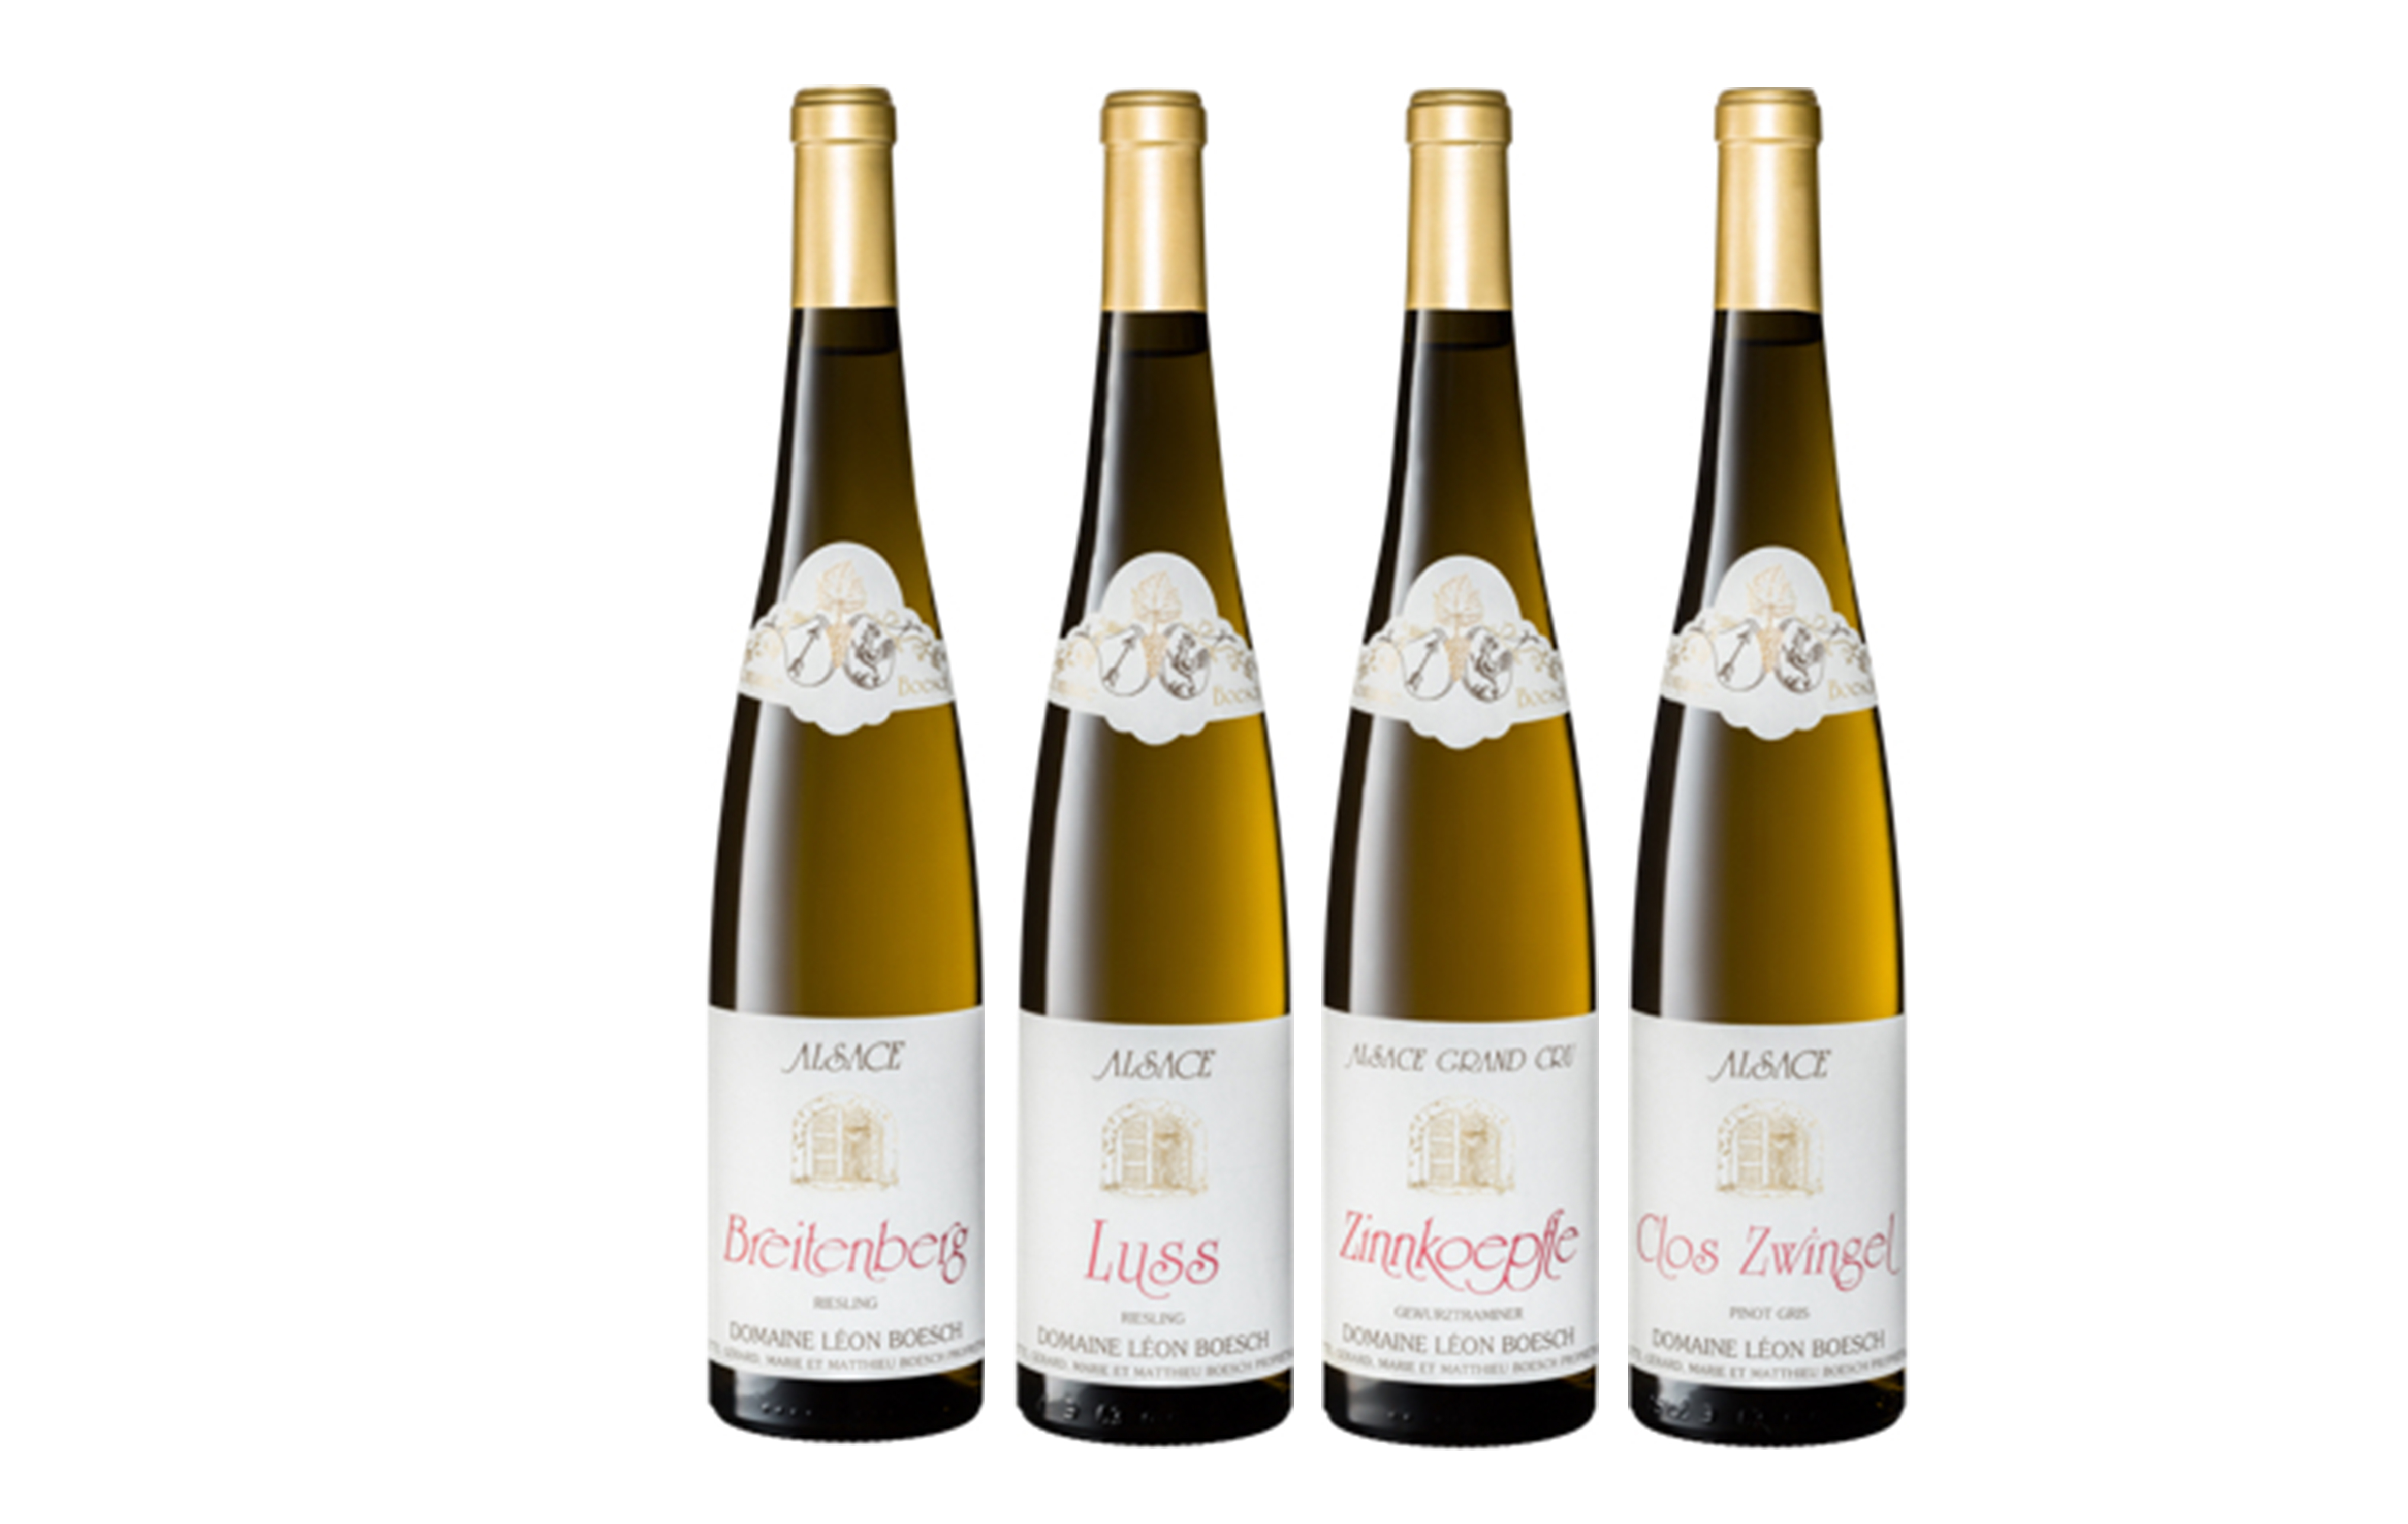 Les vins blancs secs du Domaine Boesch